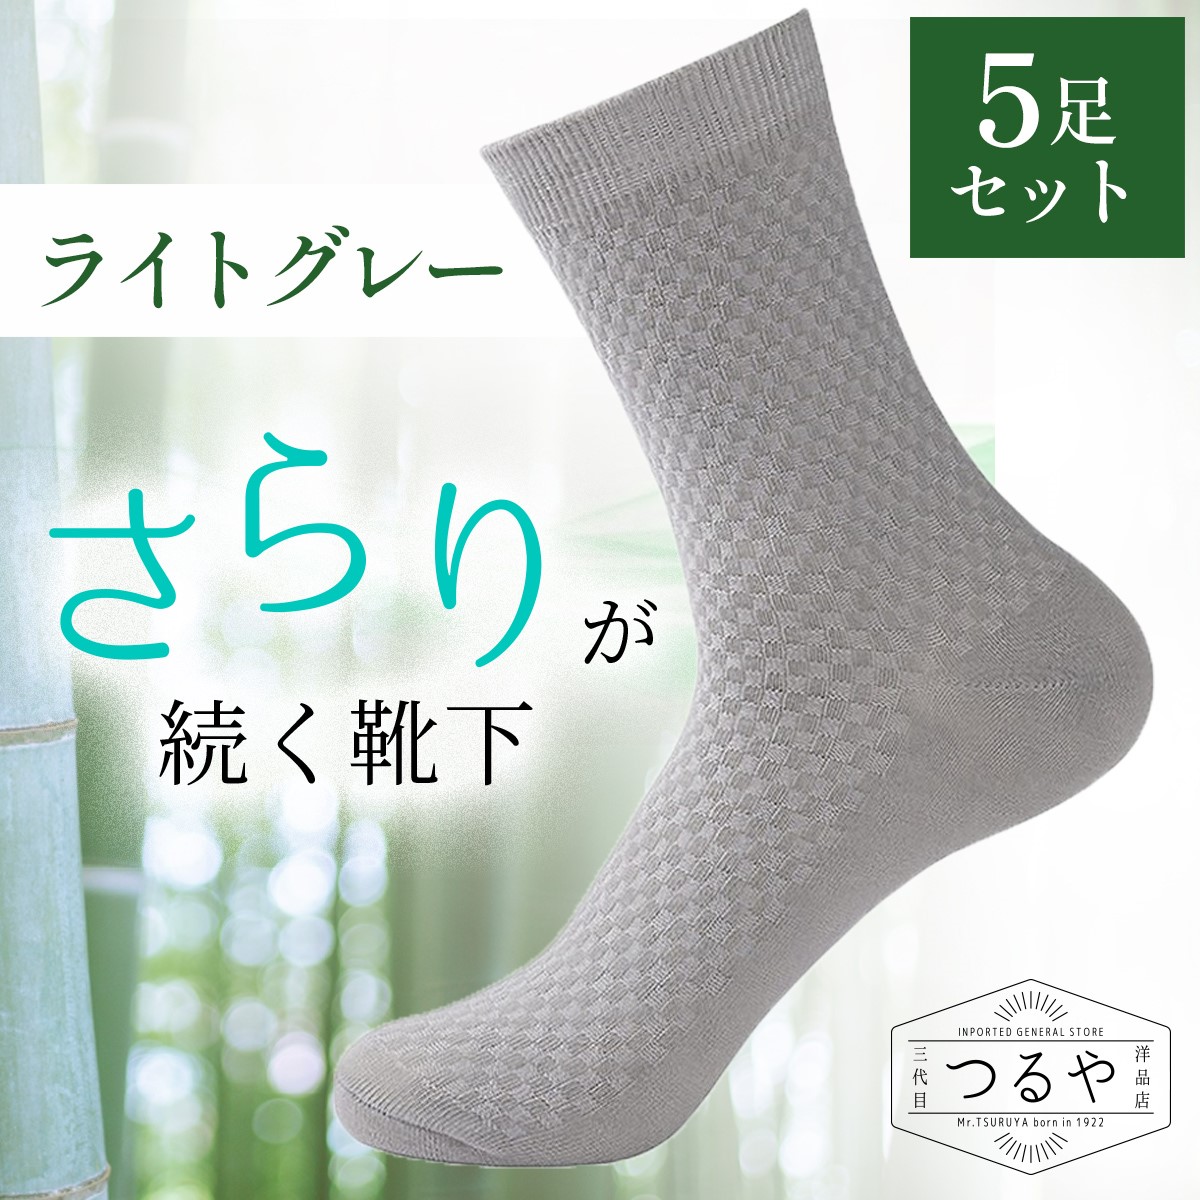 日本正規代理店品 メンズソックス 8足お得 ビジネスソックス 仕事用靴下 メンズ靴下 男性用靴下